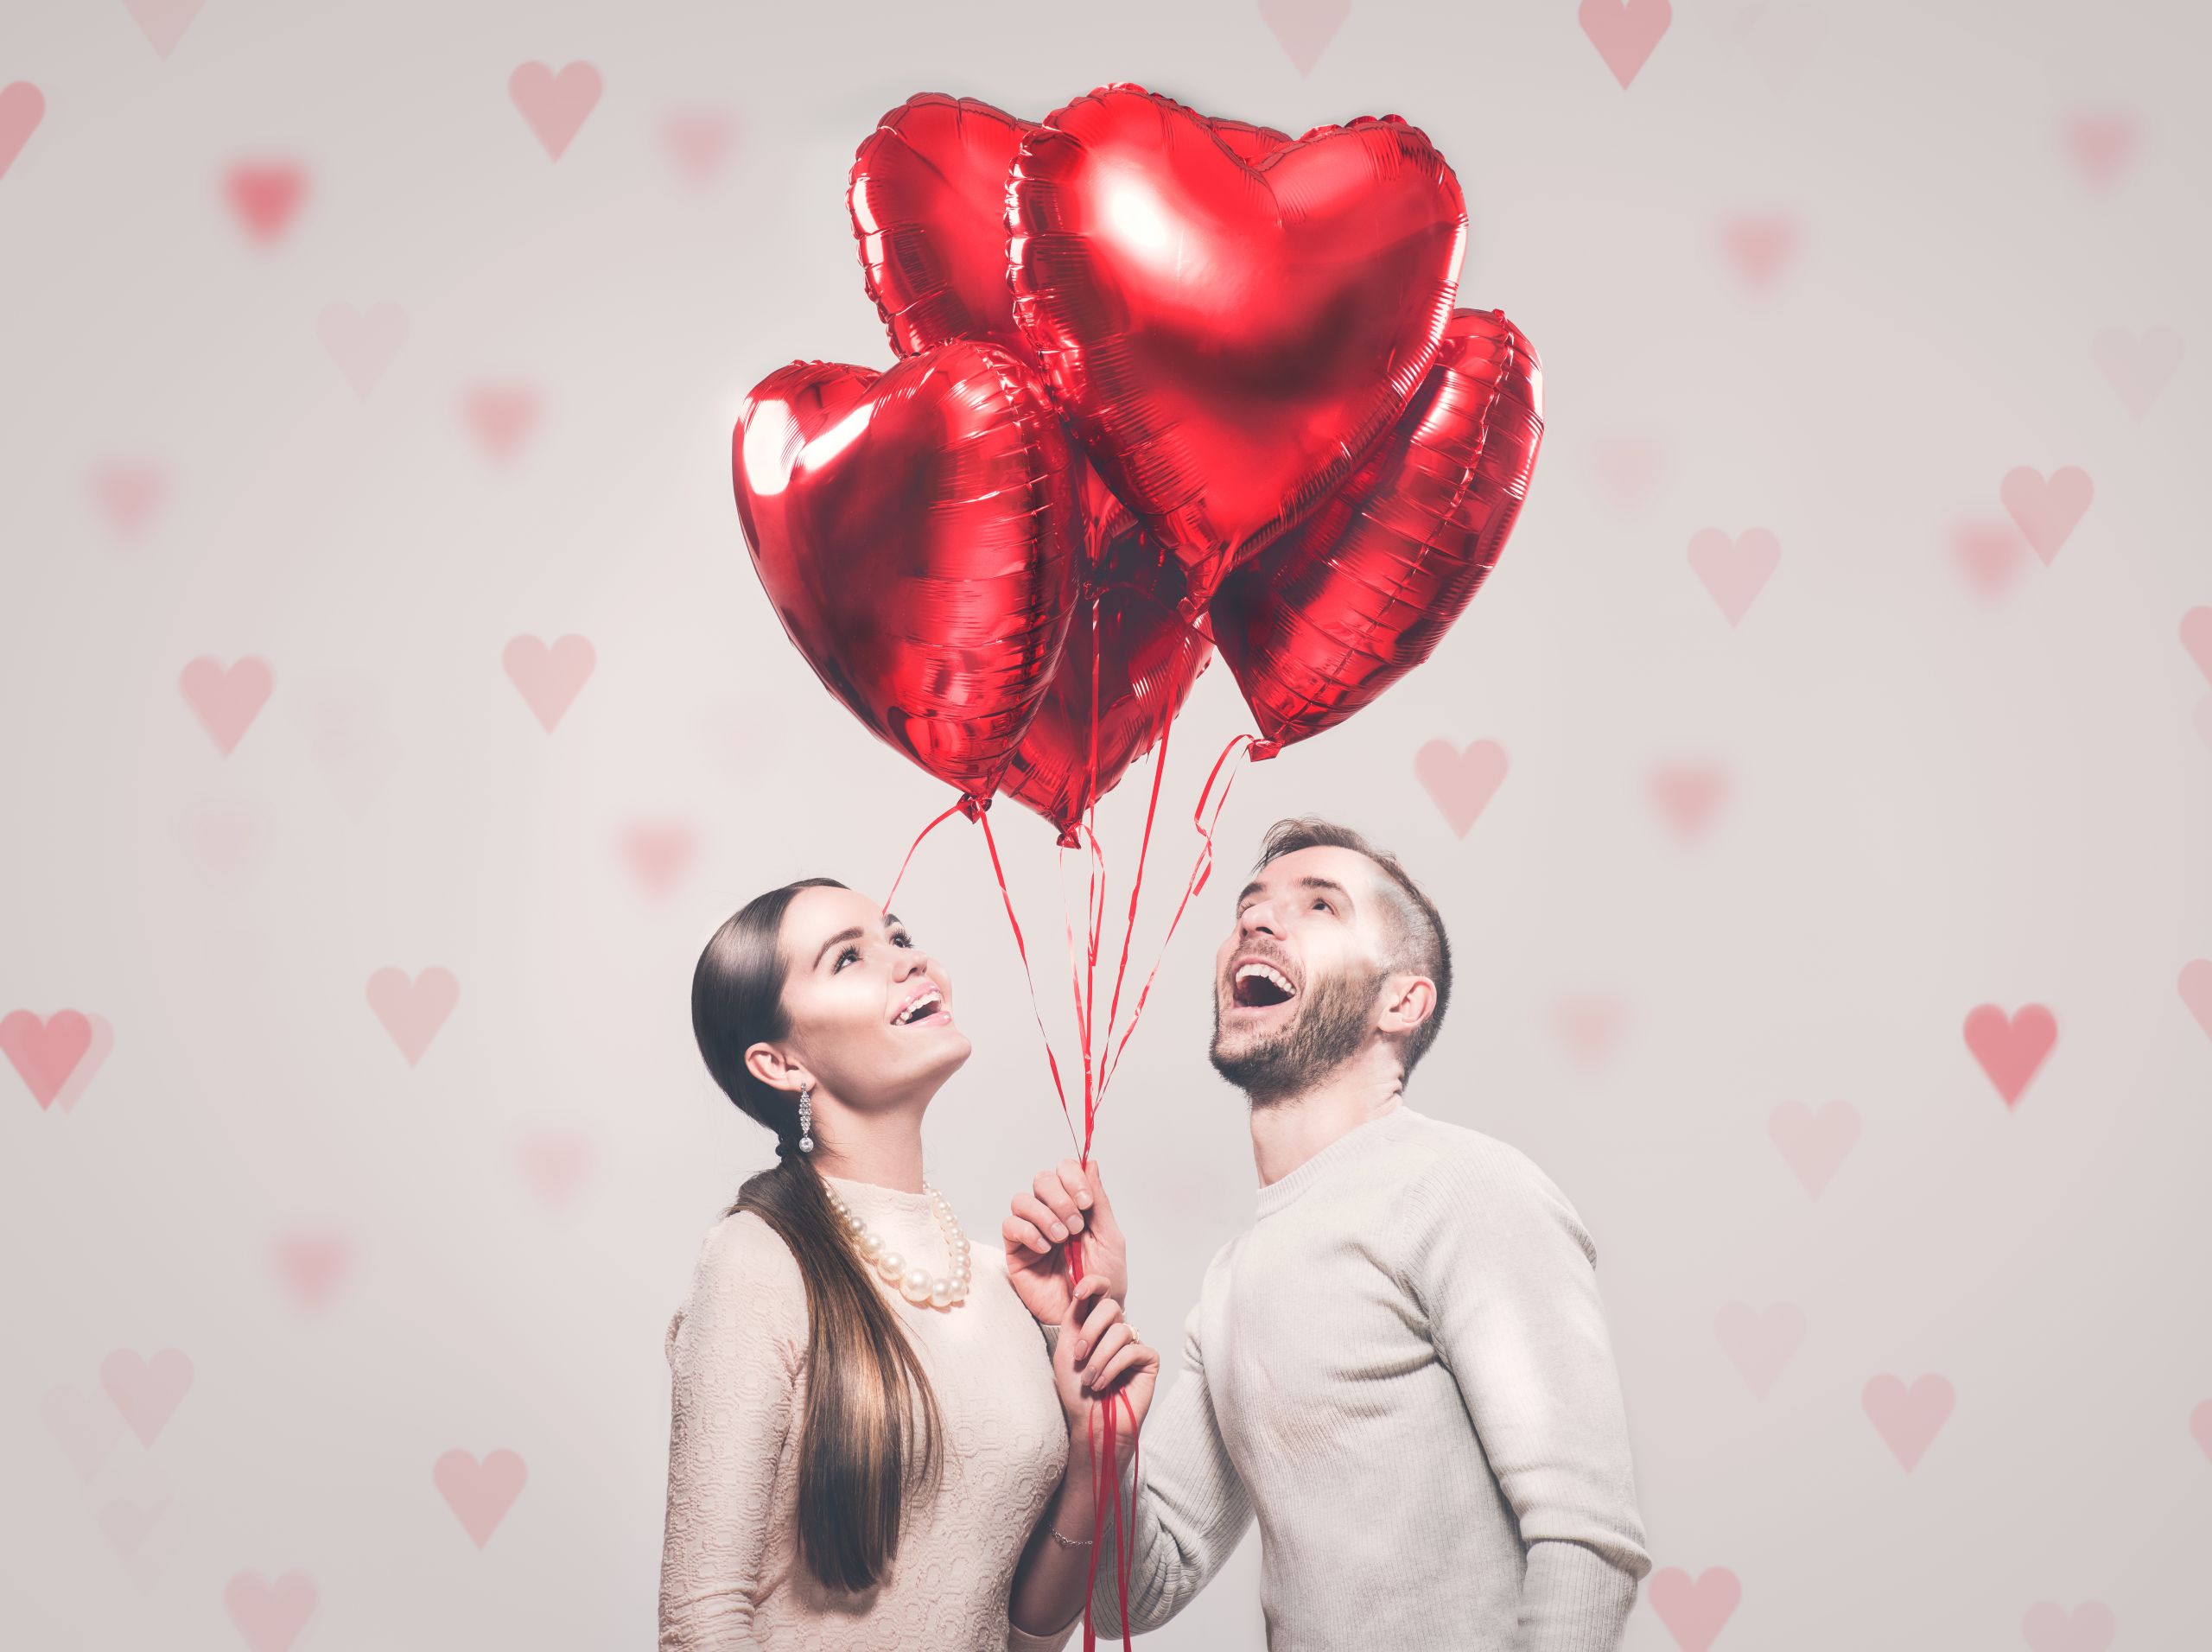 Komik Sevgililer Günü mesajları | Komik 14 Şubat Sevgililer günü mesajları resimli